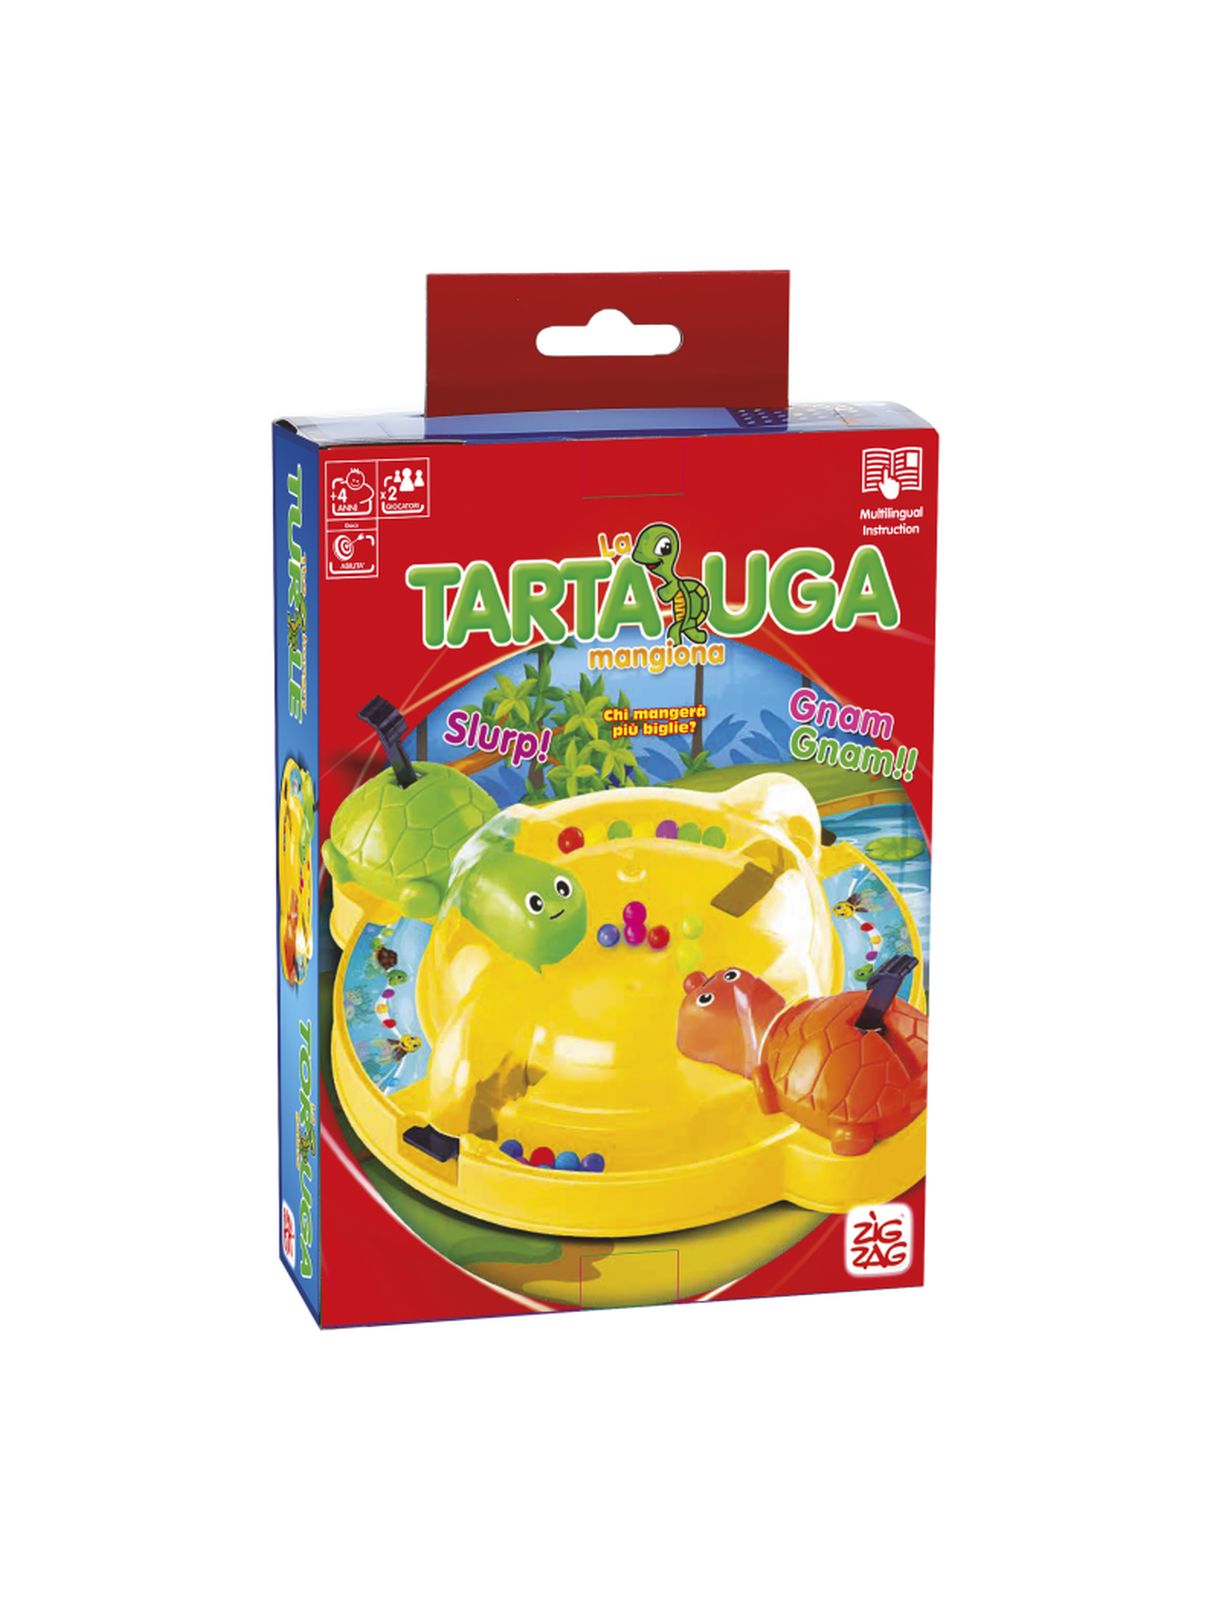 Tartaruga mangiona - travel edition - ZIG ZAG